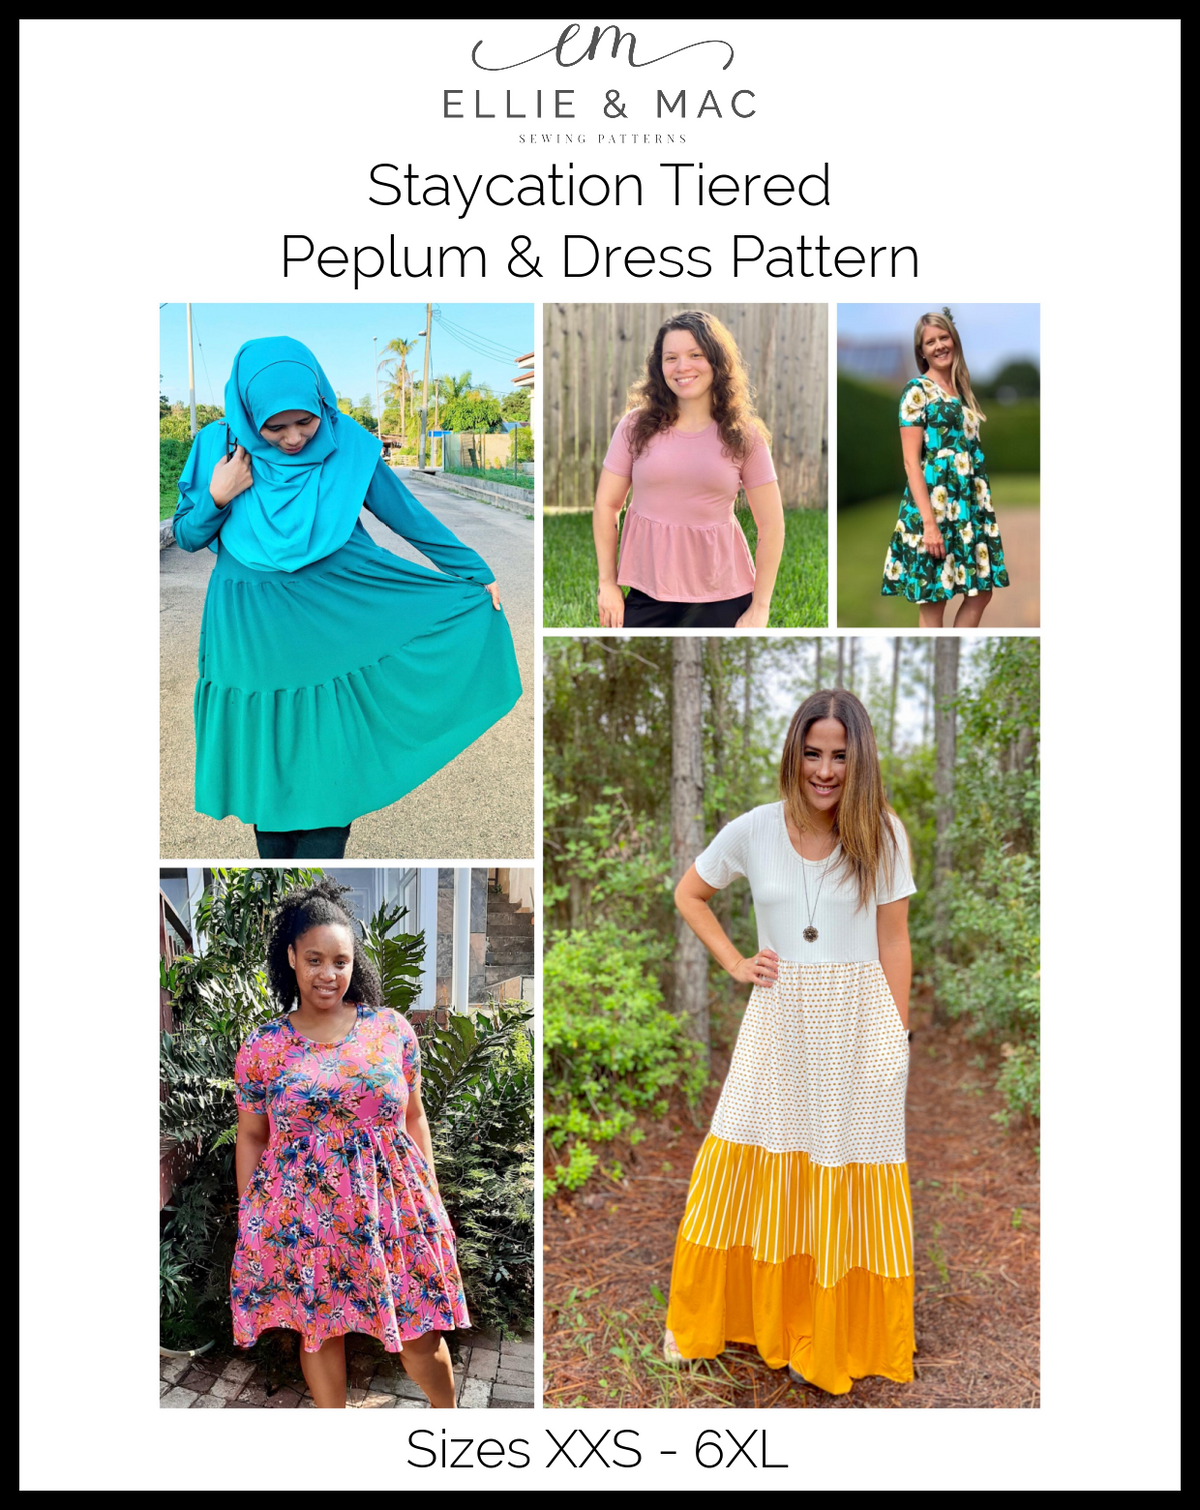 Staycation Tiered Peplum & Dress Pattern